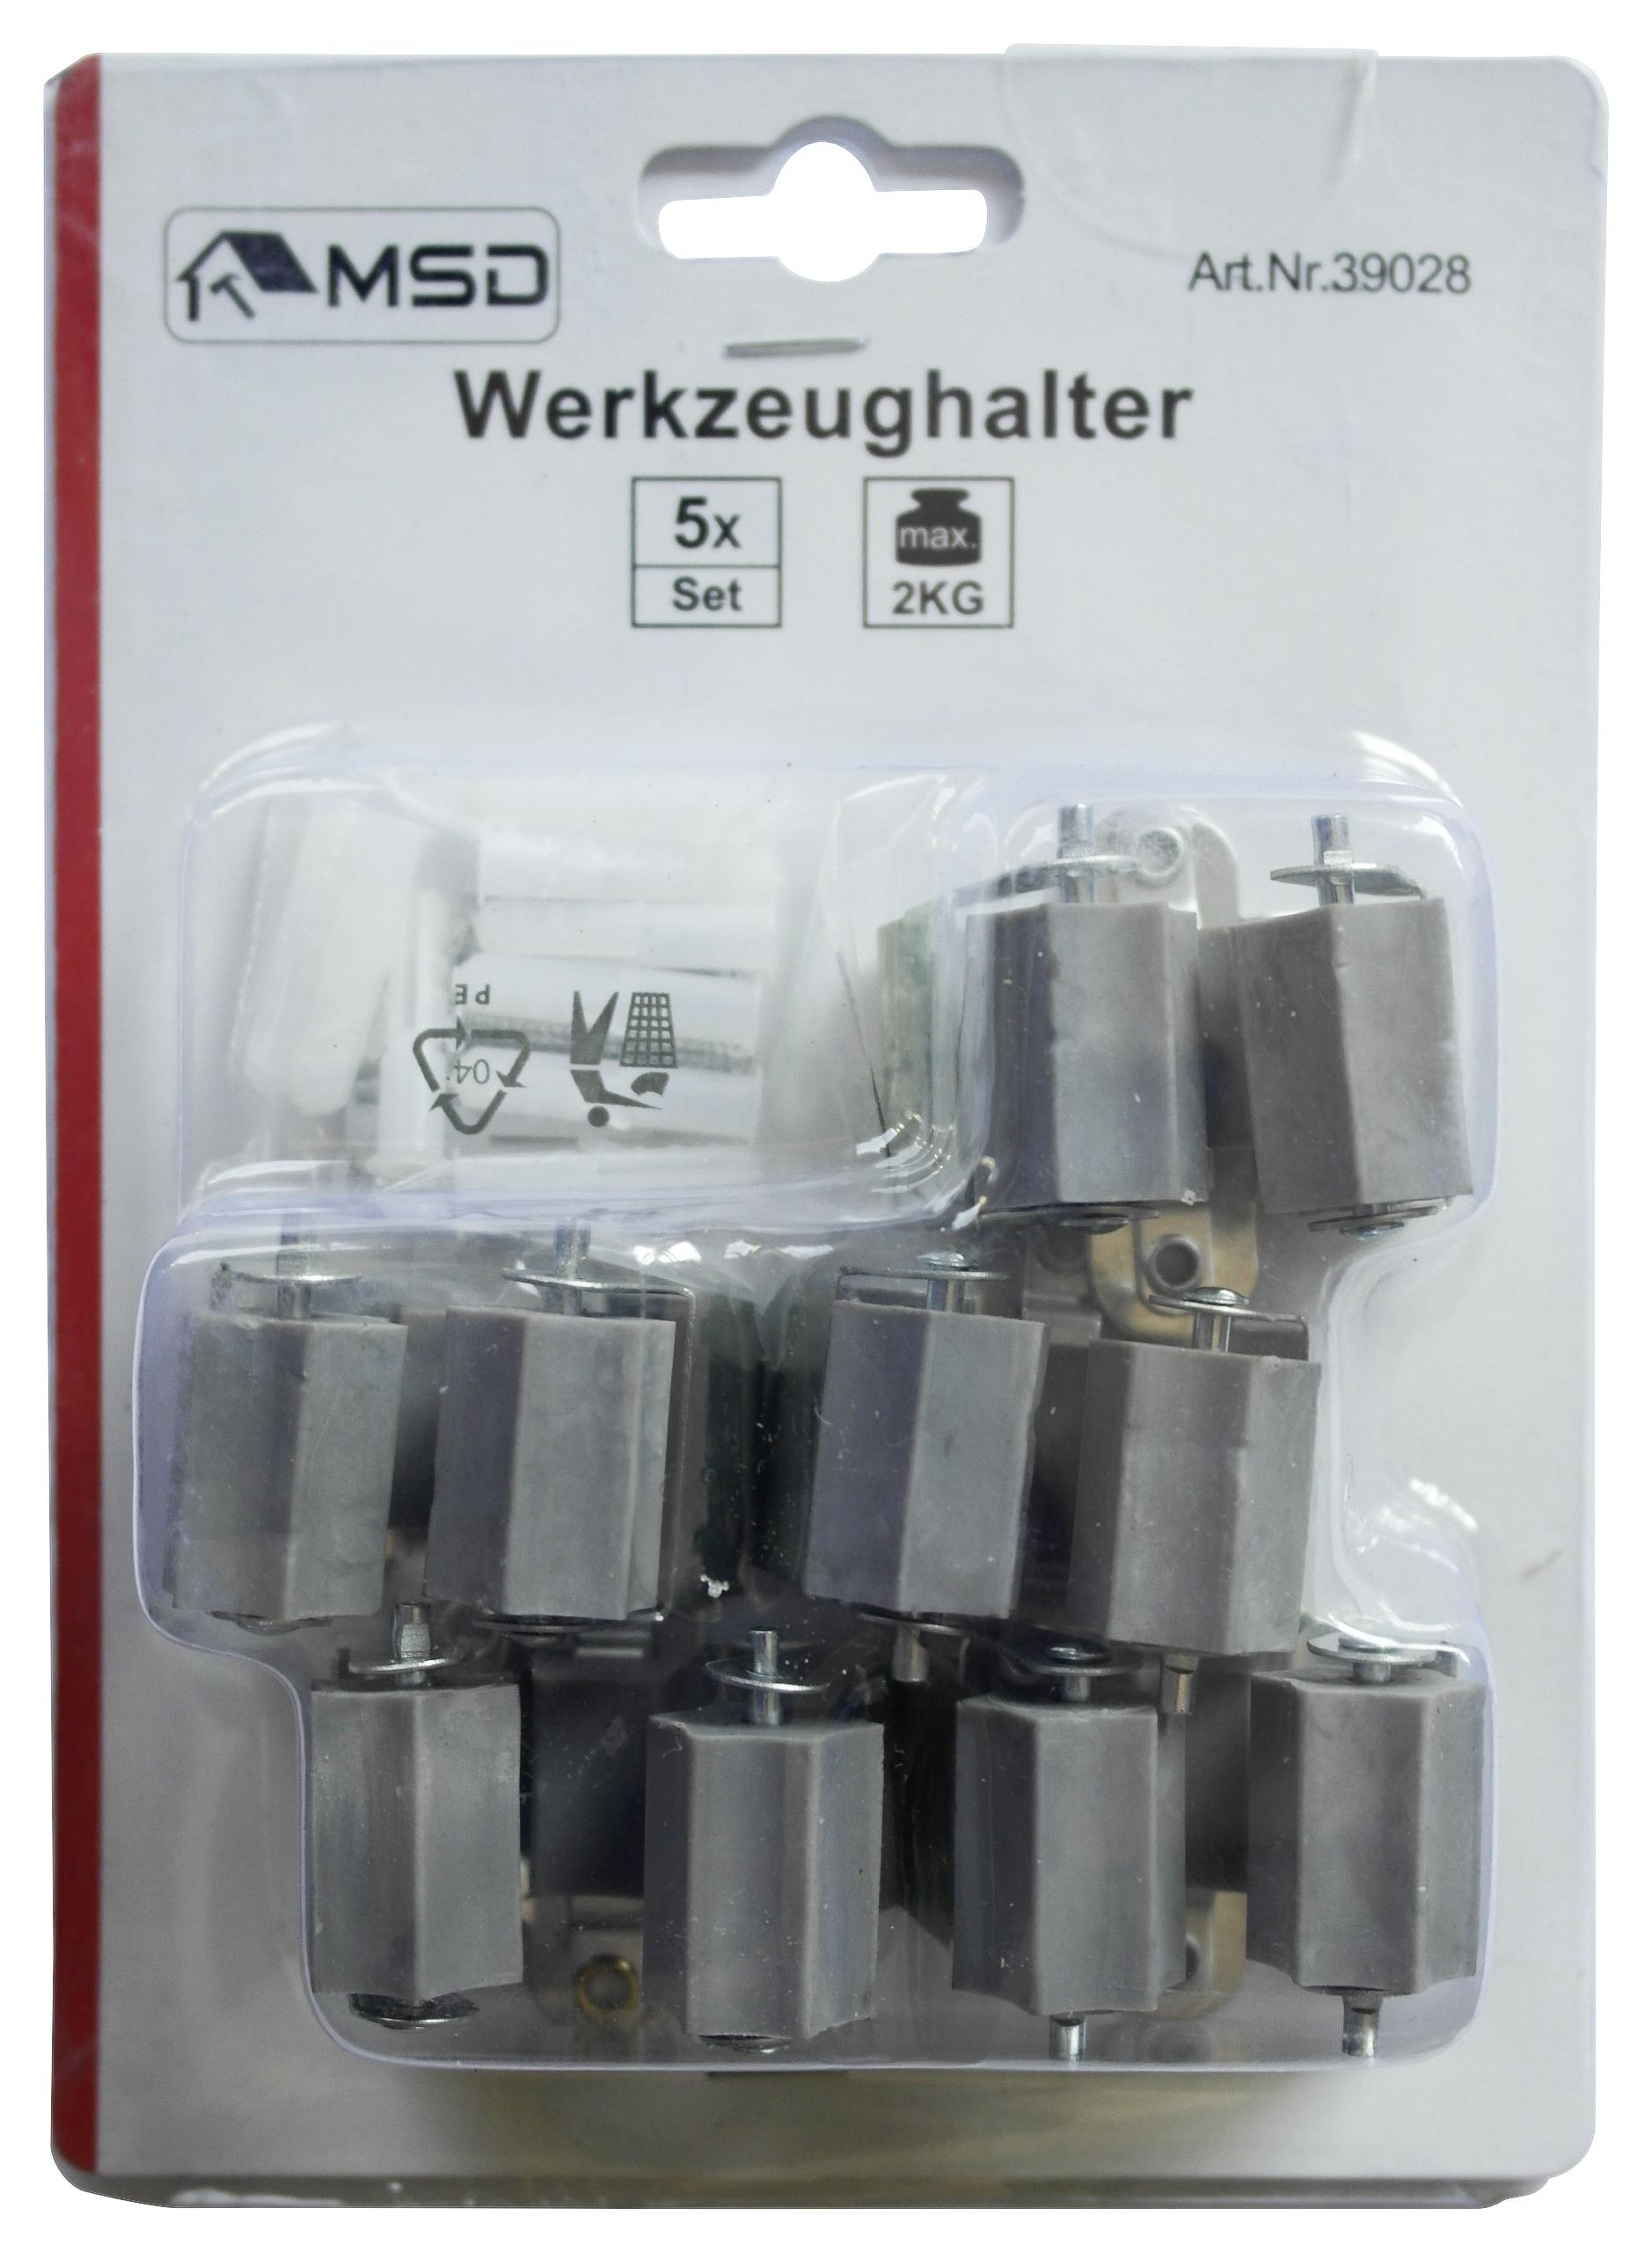 Gerätehalter Hugo Metall 5 Stk., Wandmontage - Silberfarben/Grau, Basics, Kunststoff/Metall